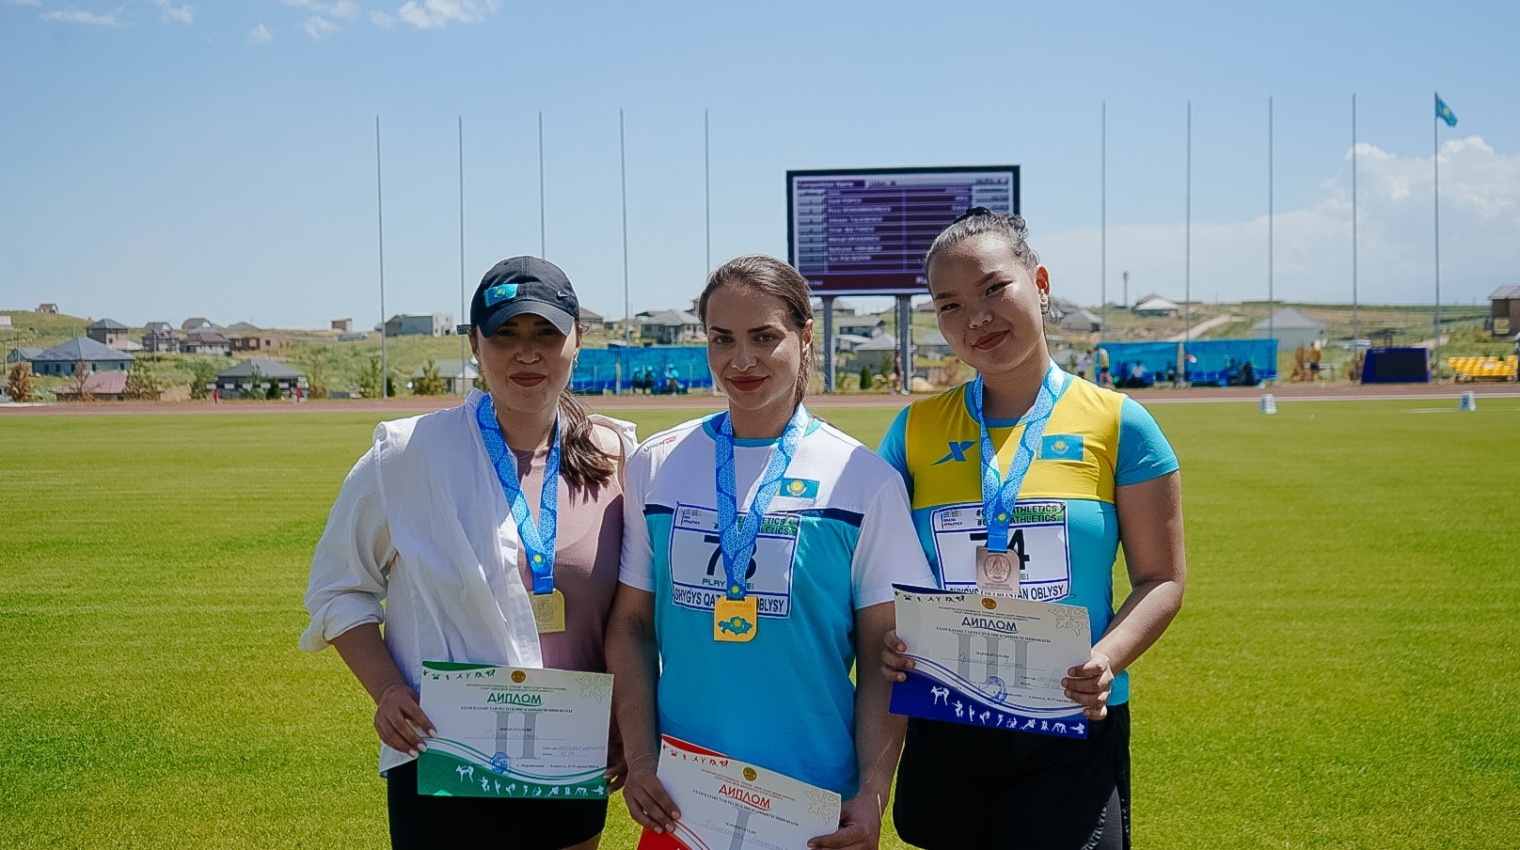 С 11 по 13 июня в Алматы прошел XXXII Чемпионат Республики Казахстан по легкой атлетике